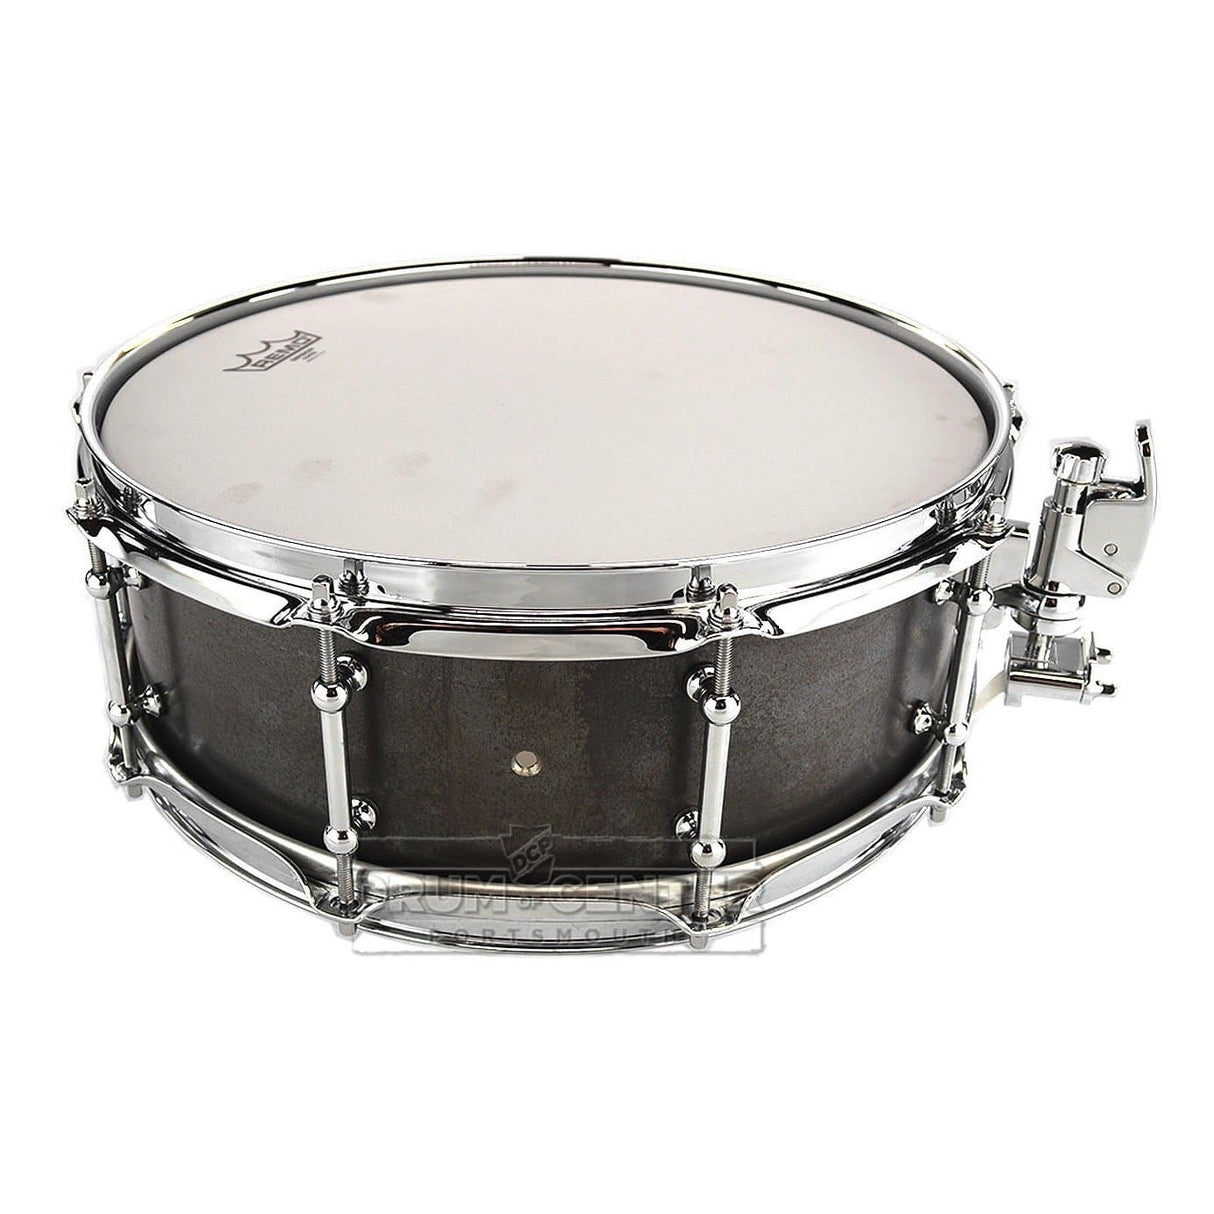 Keplinger Black Iron Snare Drum 14x5